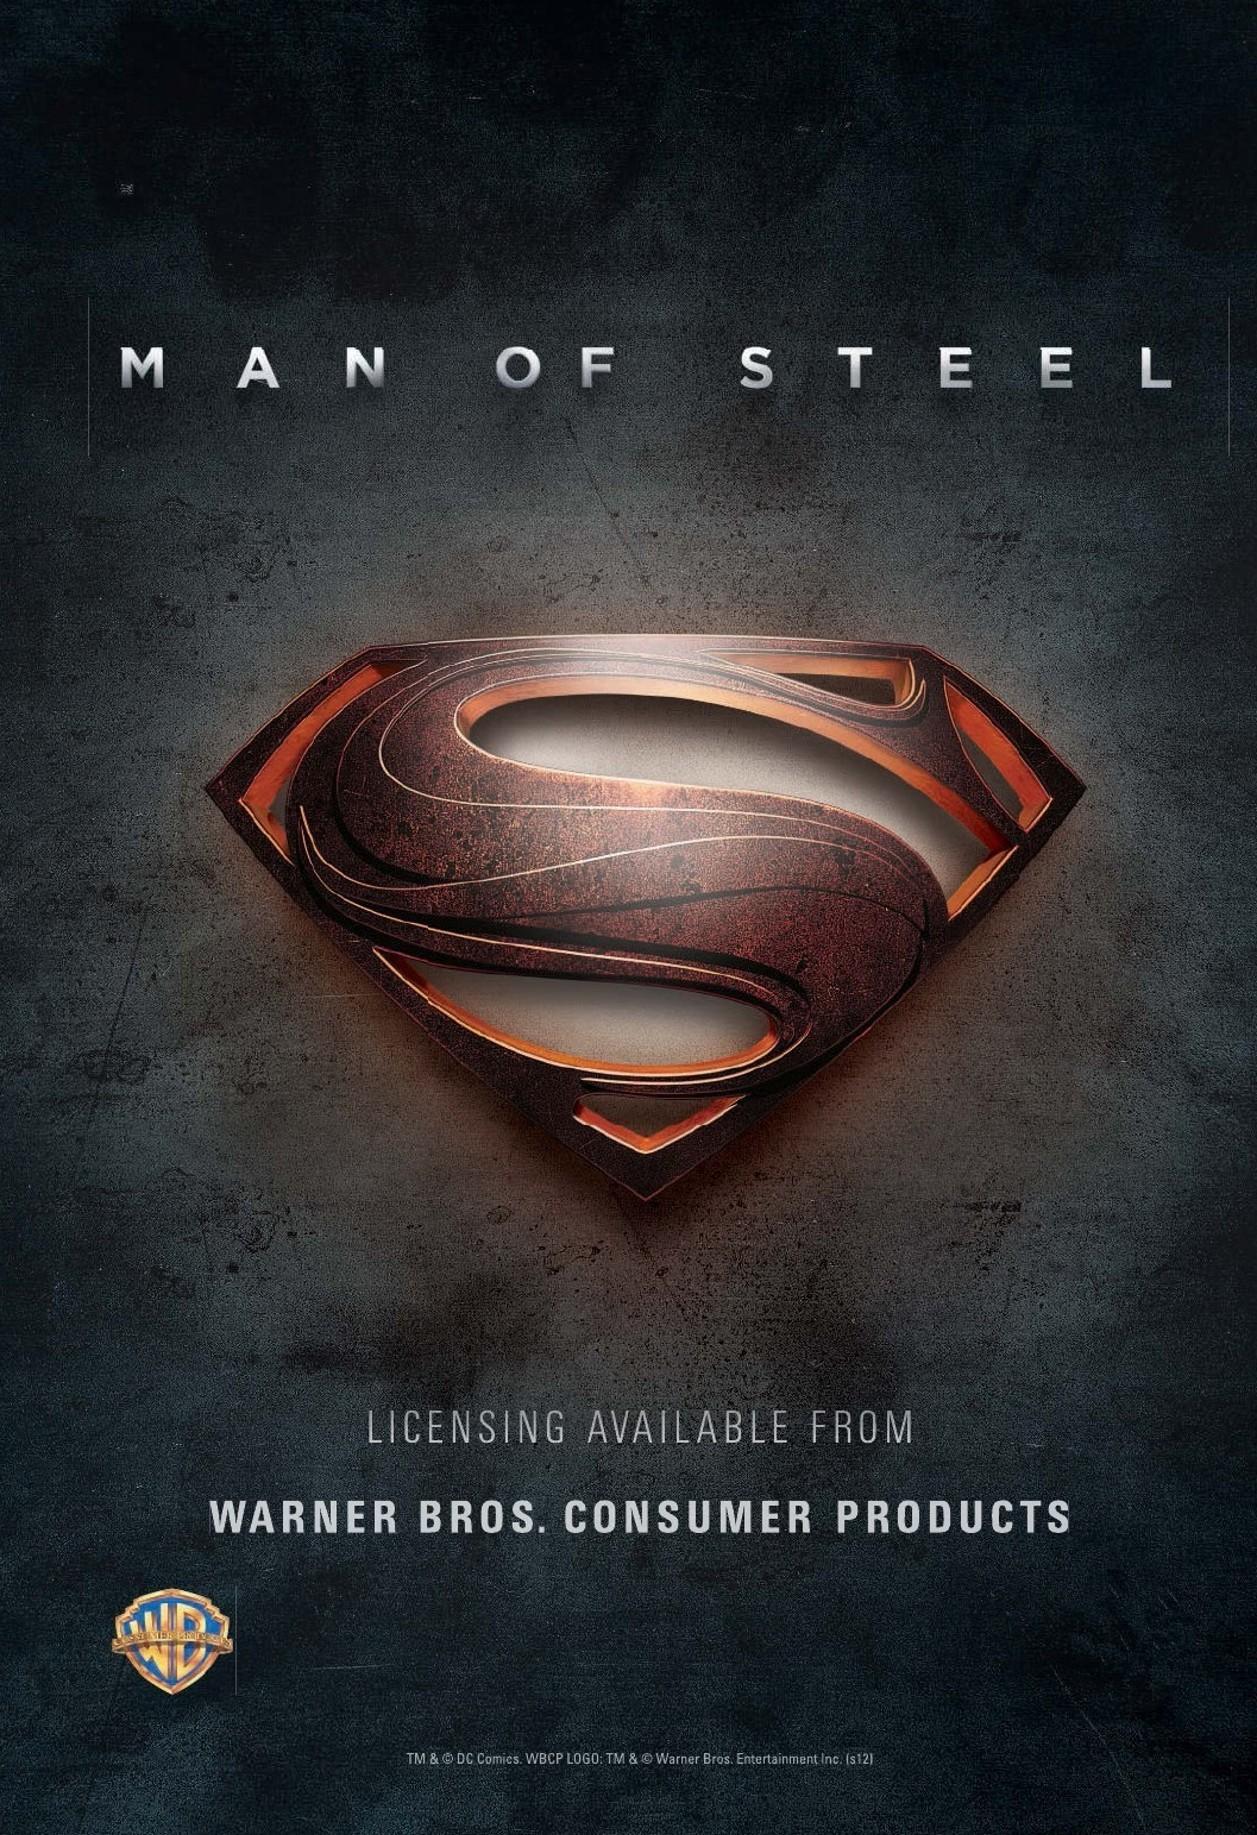 Постер фильма Человек из стали | Man of Steel